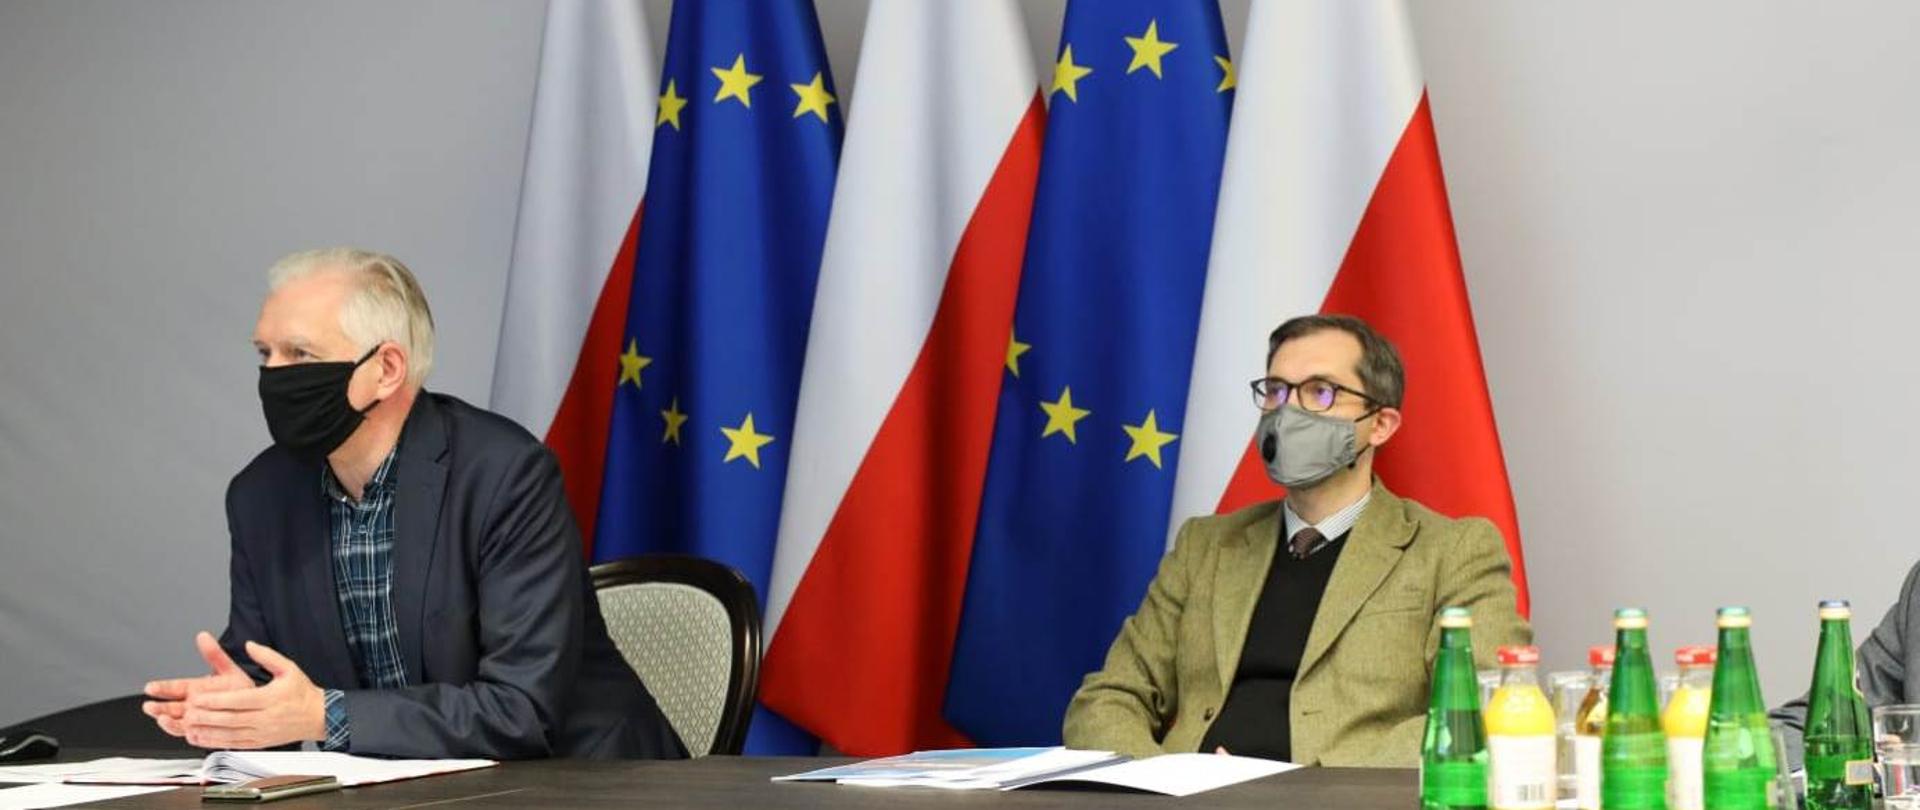 Na zdjęciu wicepremier Jarosław Gowin i wiceminister Marek Niedużak podczas wideokonferencji. Siedzą za stołem, mają maseczki na twarzach, w tle fagi Polski i UE.